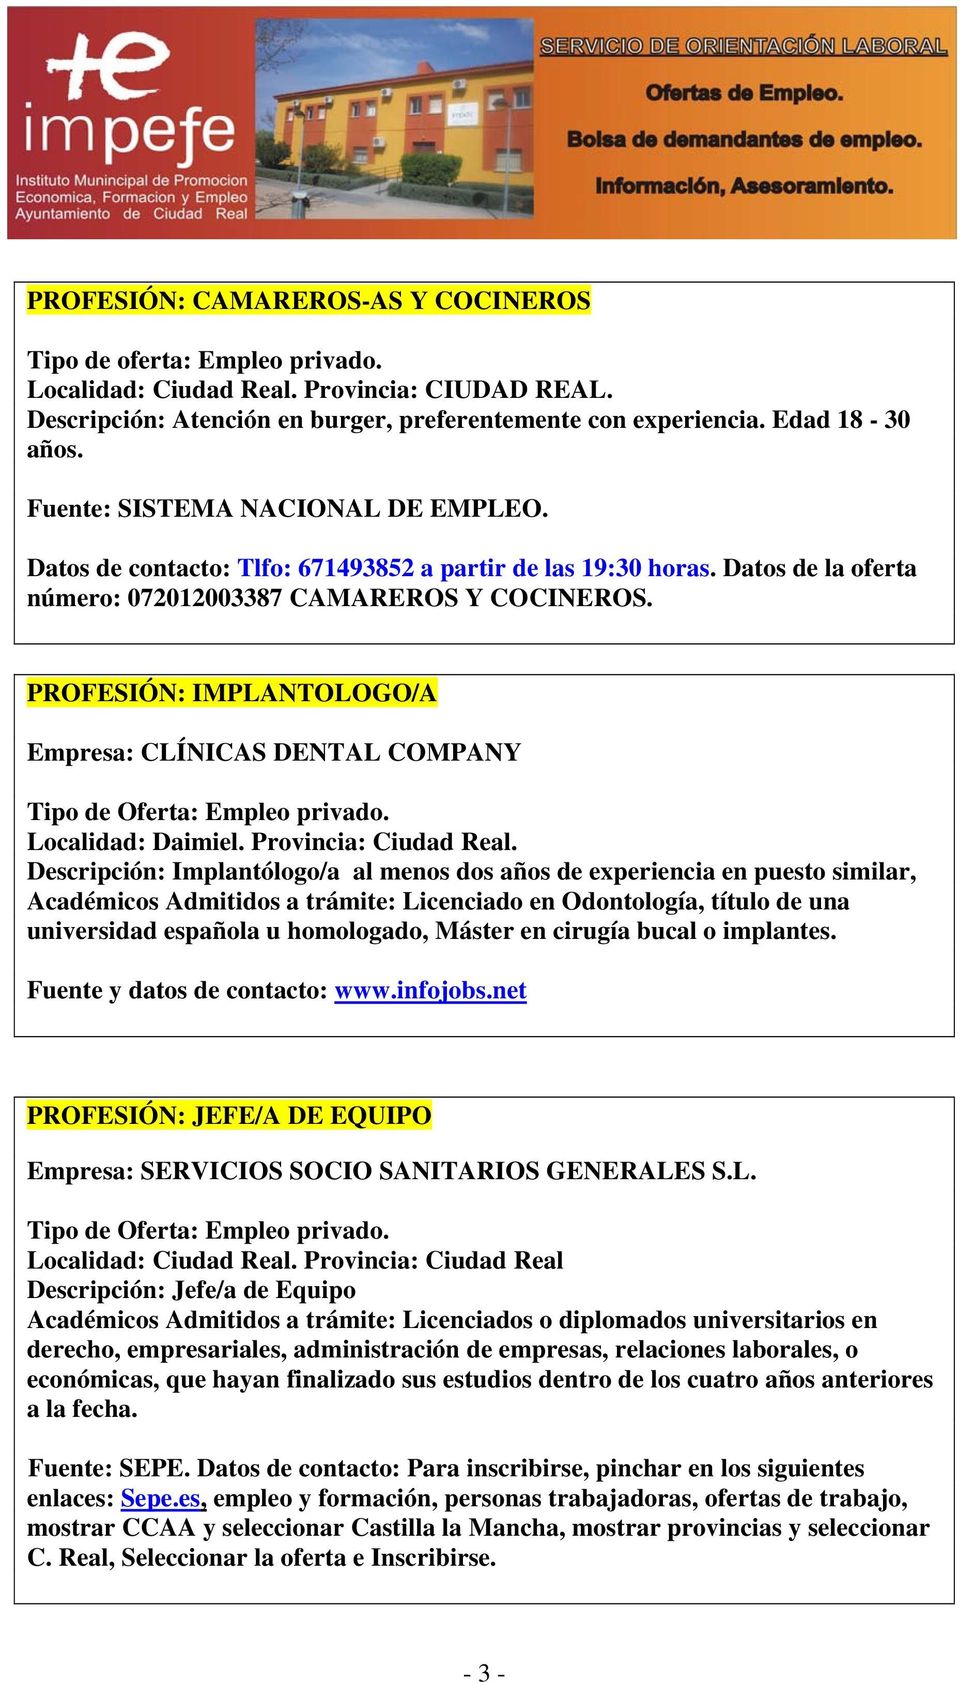 PROFESIÓN: IMPLANTOLOGO/A Empresa: CLÍNICAS DENTAL COMPANY Localidad: Daimiel. Provincia: Ciudad Real.